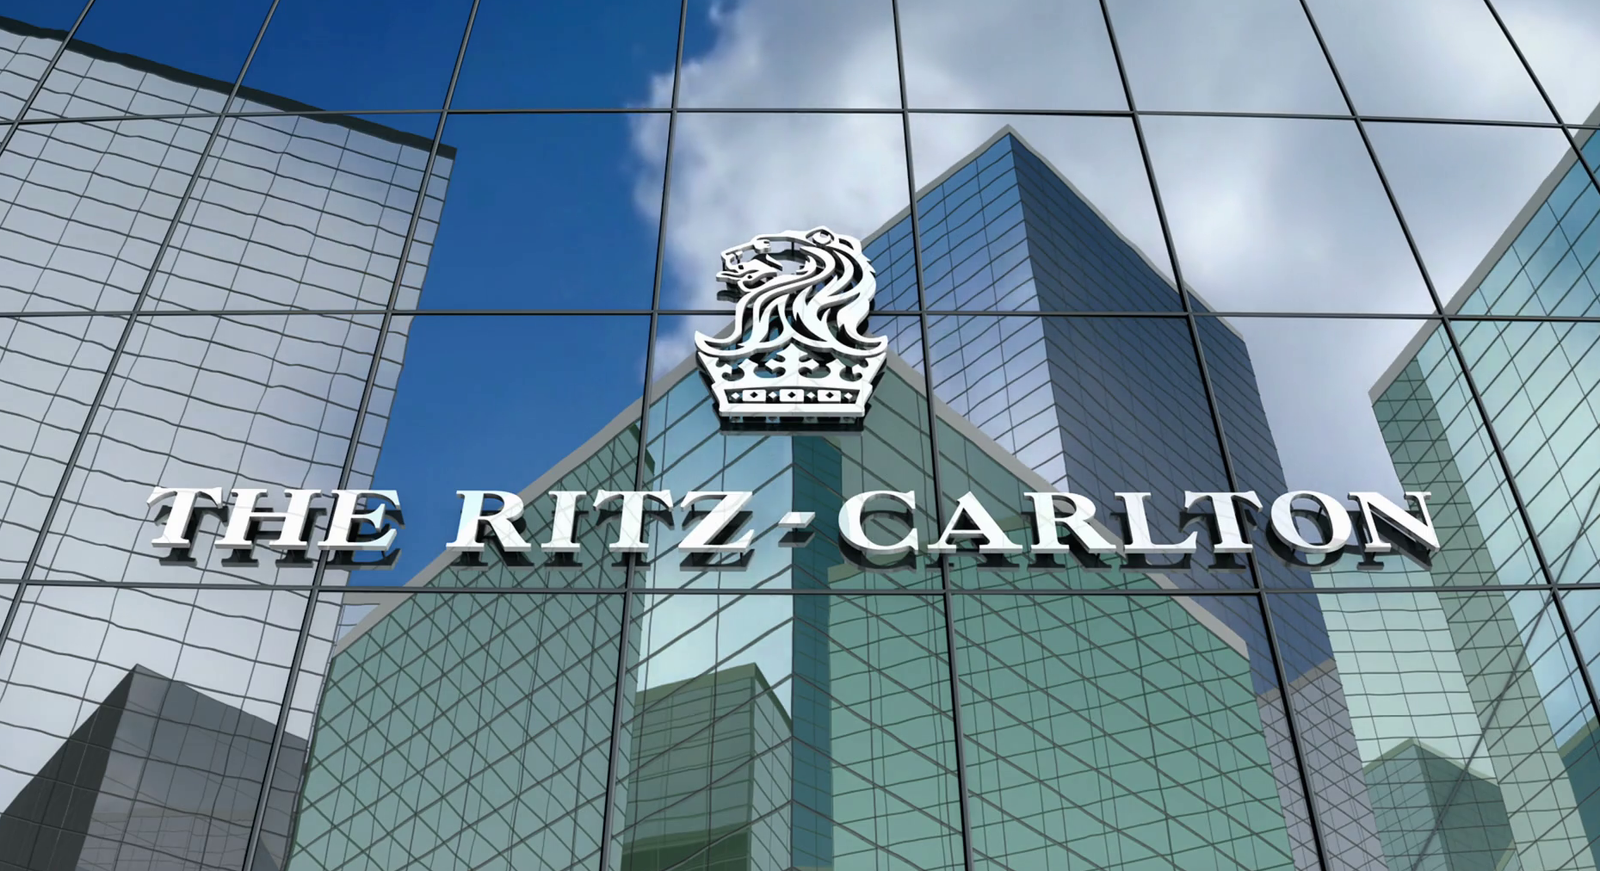 Ritz Carlton SWOT analysis